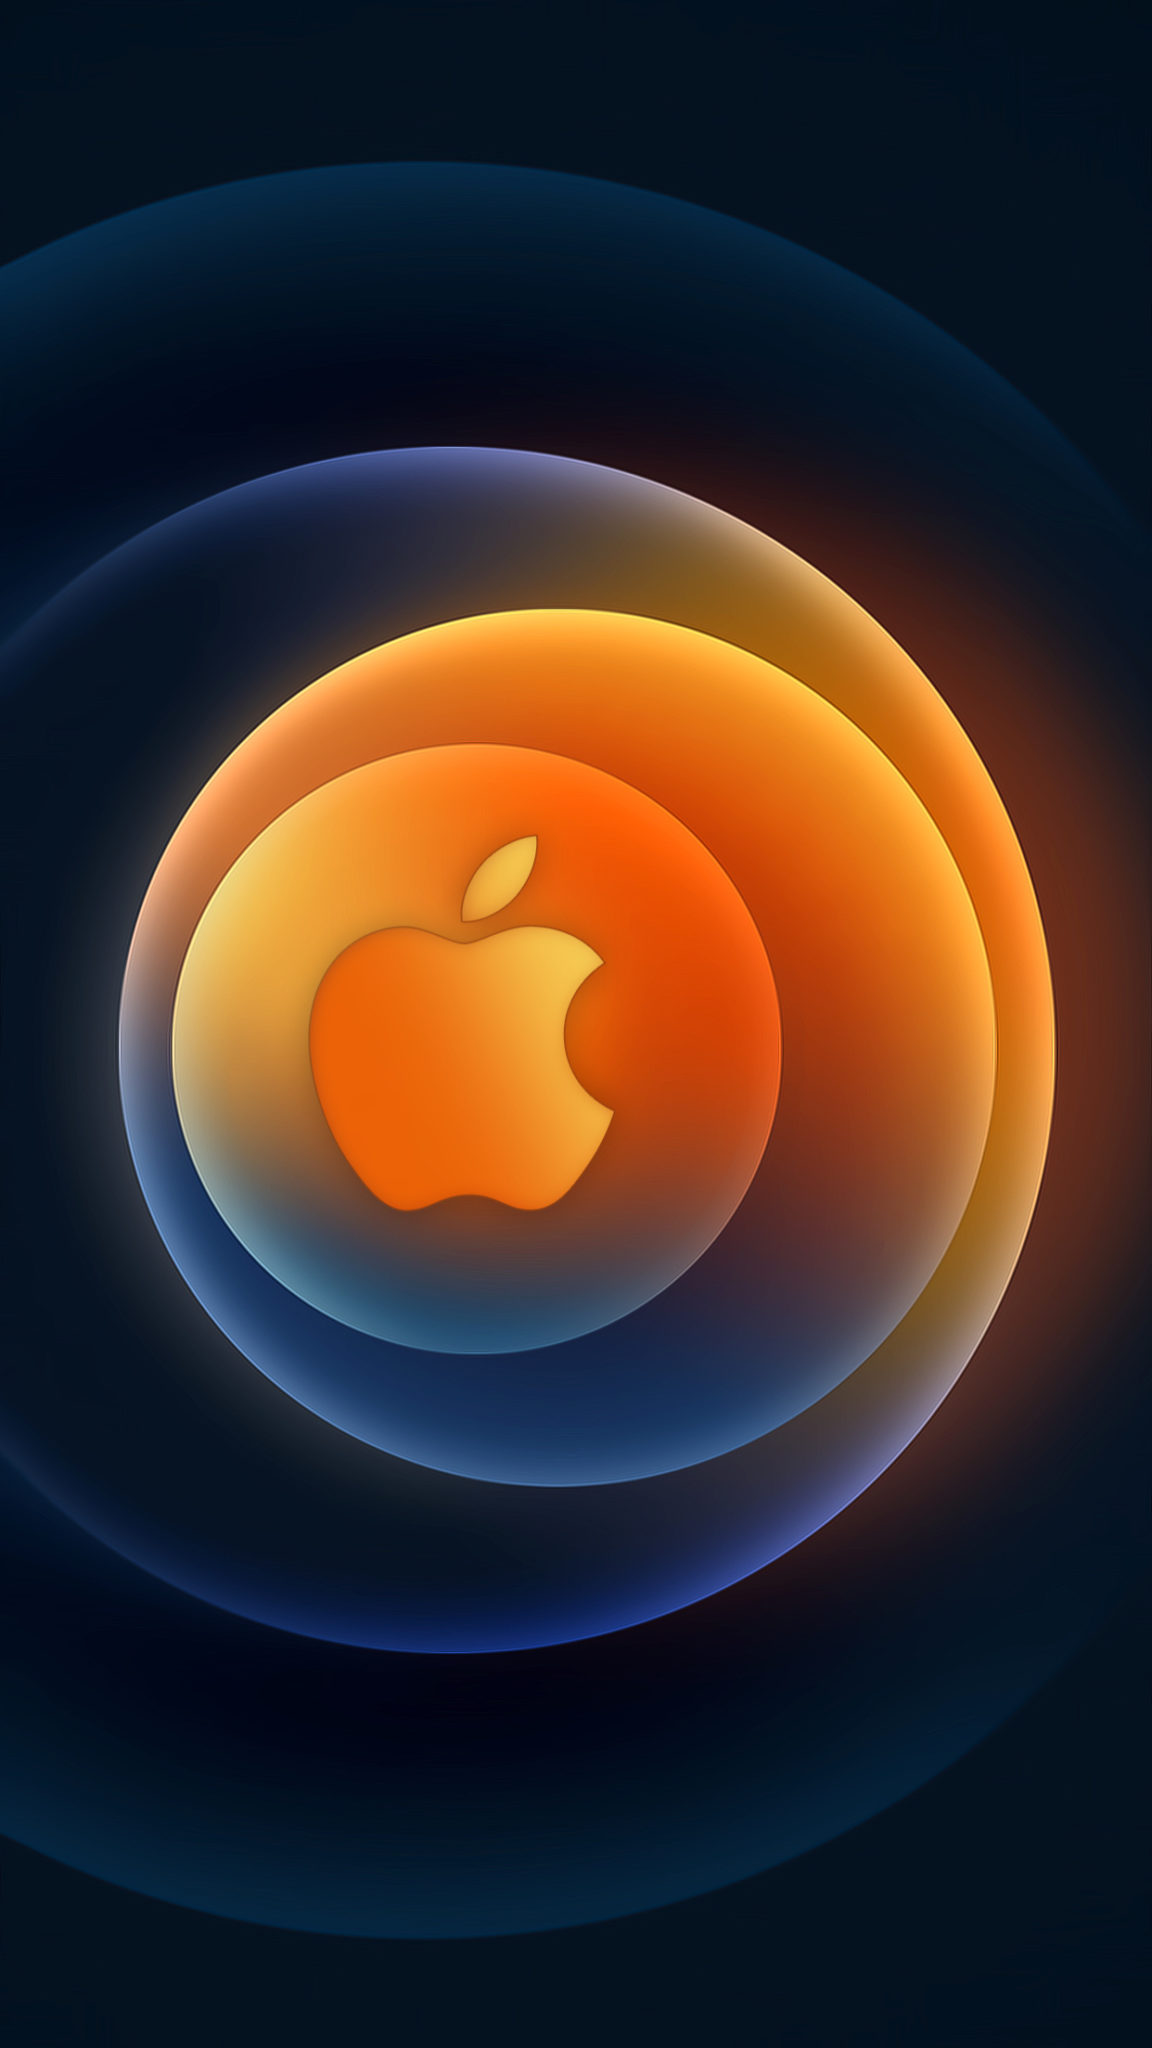 Download Apple's Hi, Speed iPhone 12 Event Wallpaper Here - iOS Hacker